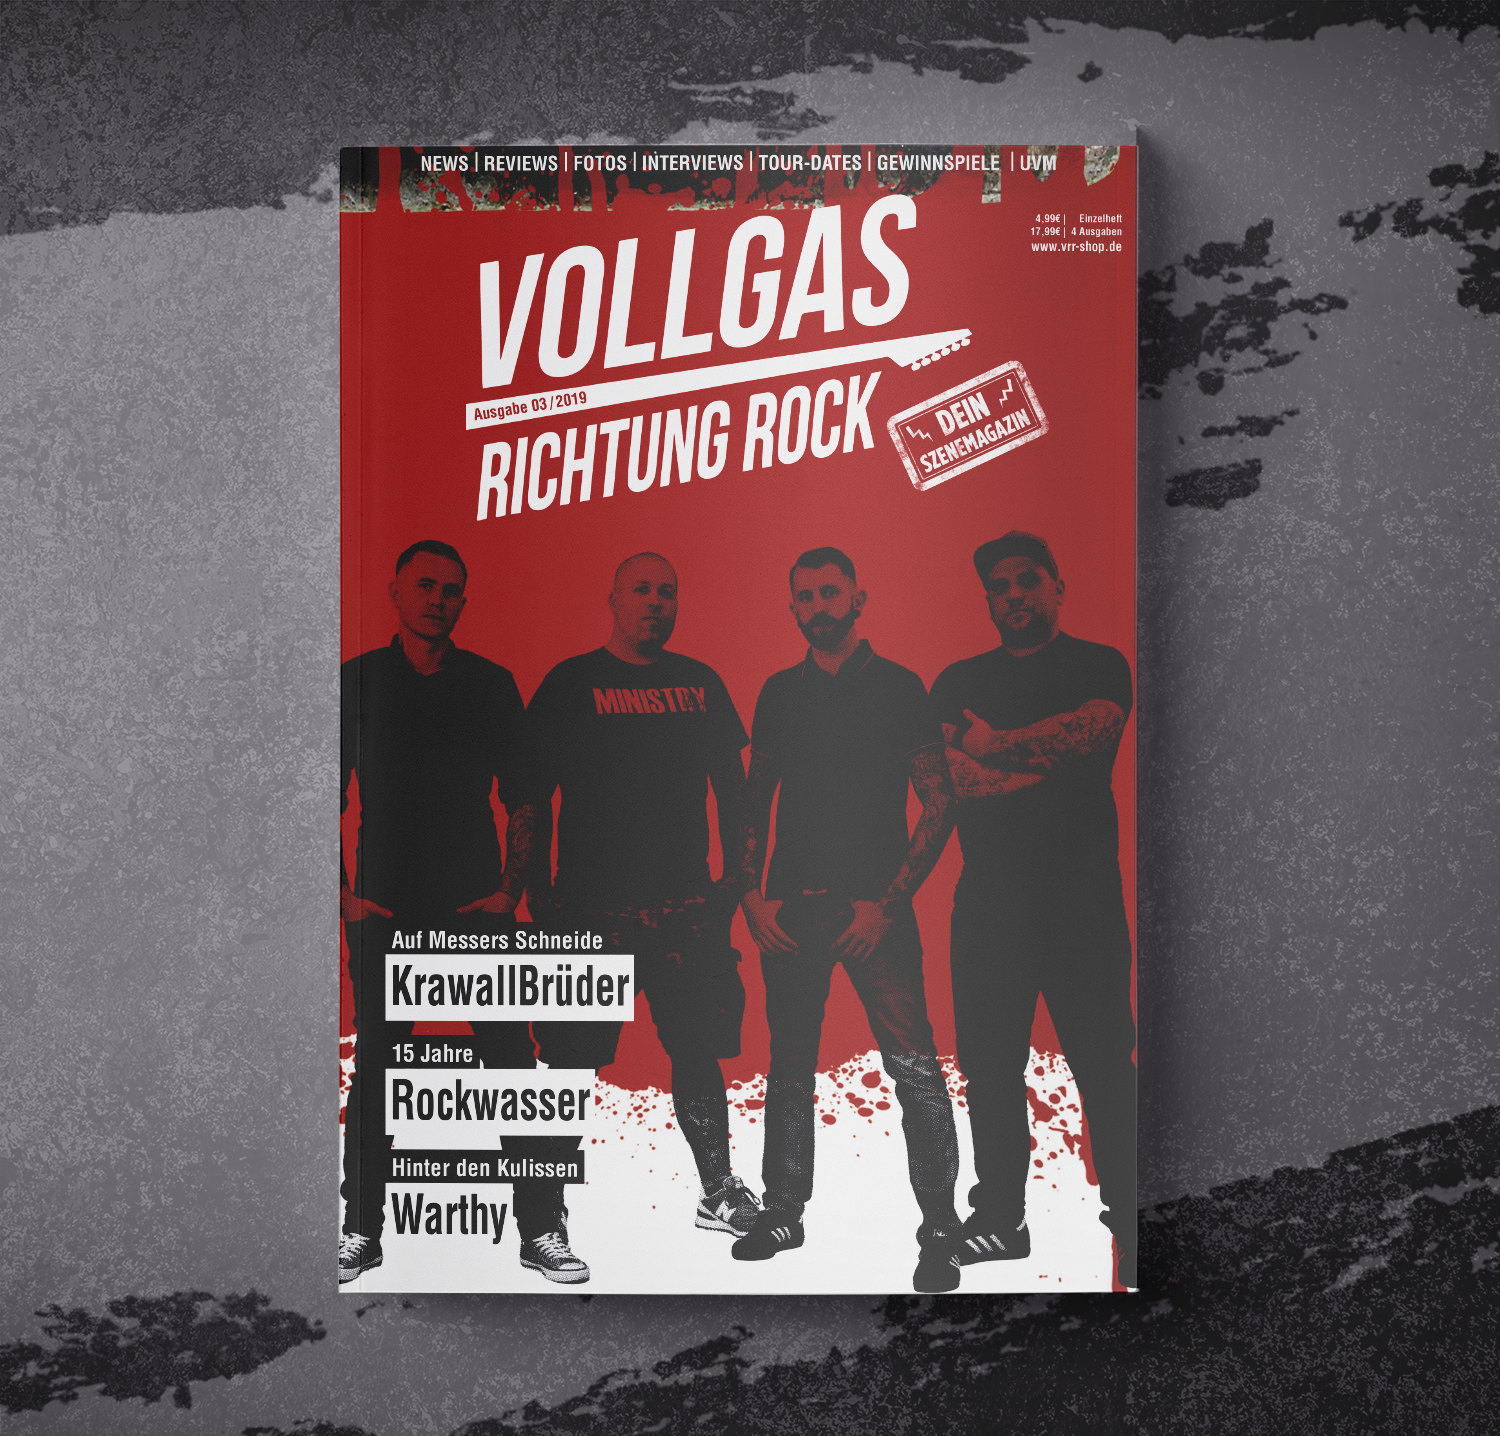 VOLLGAS RICHTUNG ROCK - MAGAZIN AUSGABE 03/2019